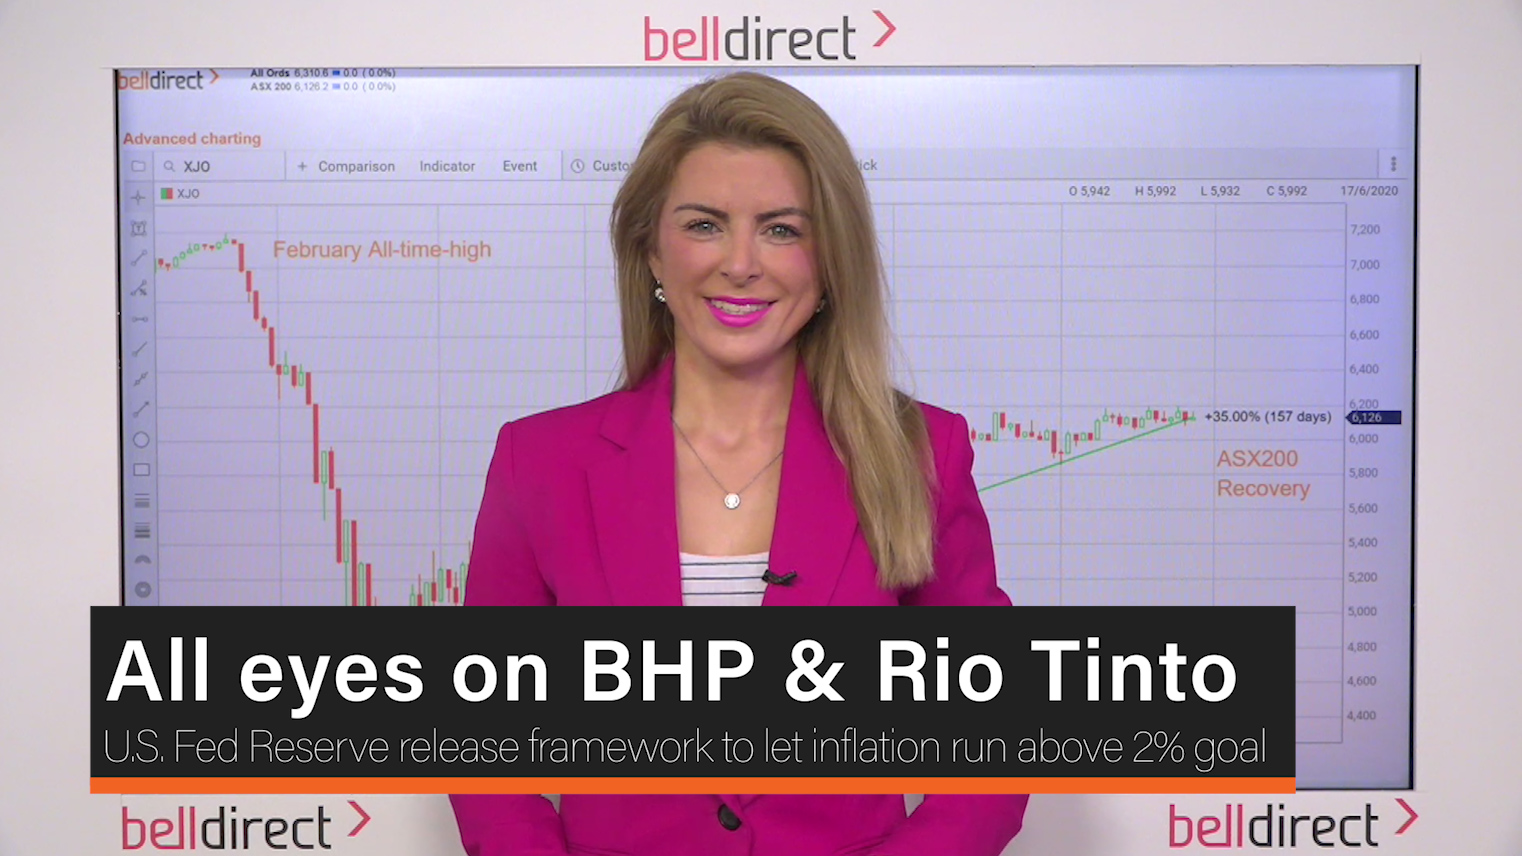 All eyes on BHP & Rio Tinto